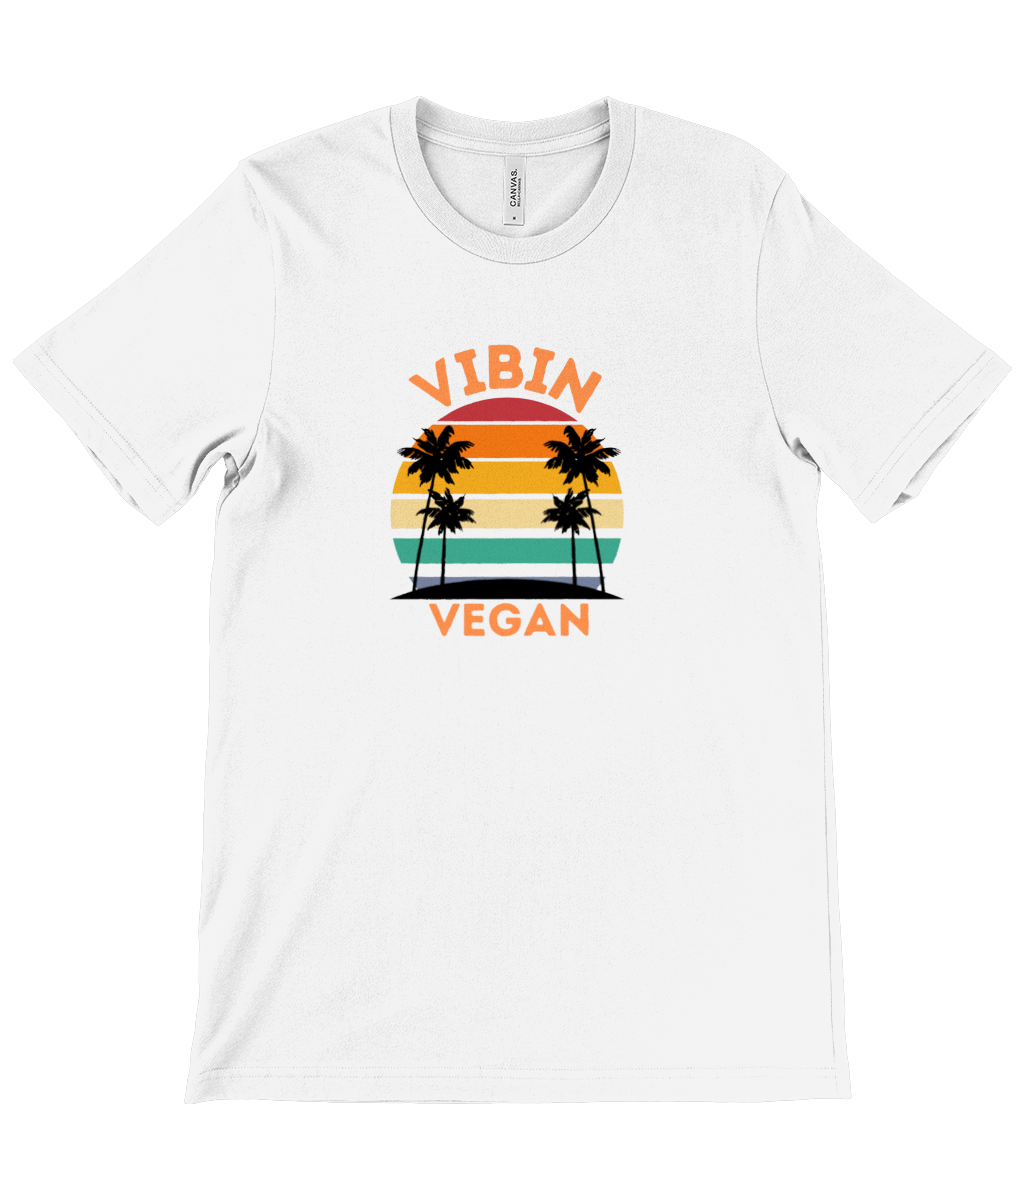 Vibin Vegan T-Shirt